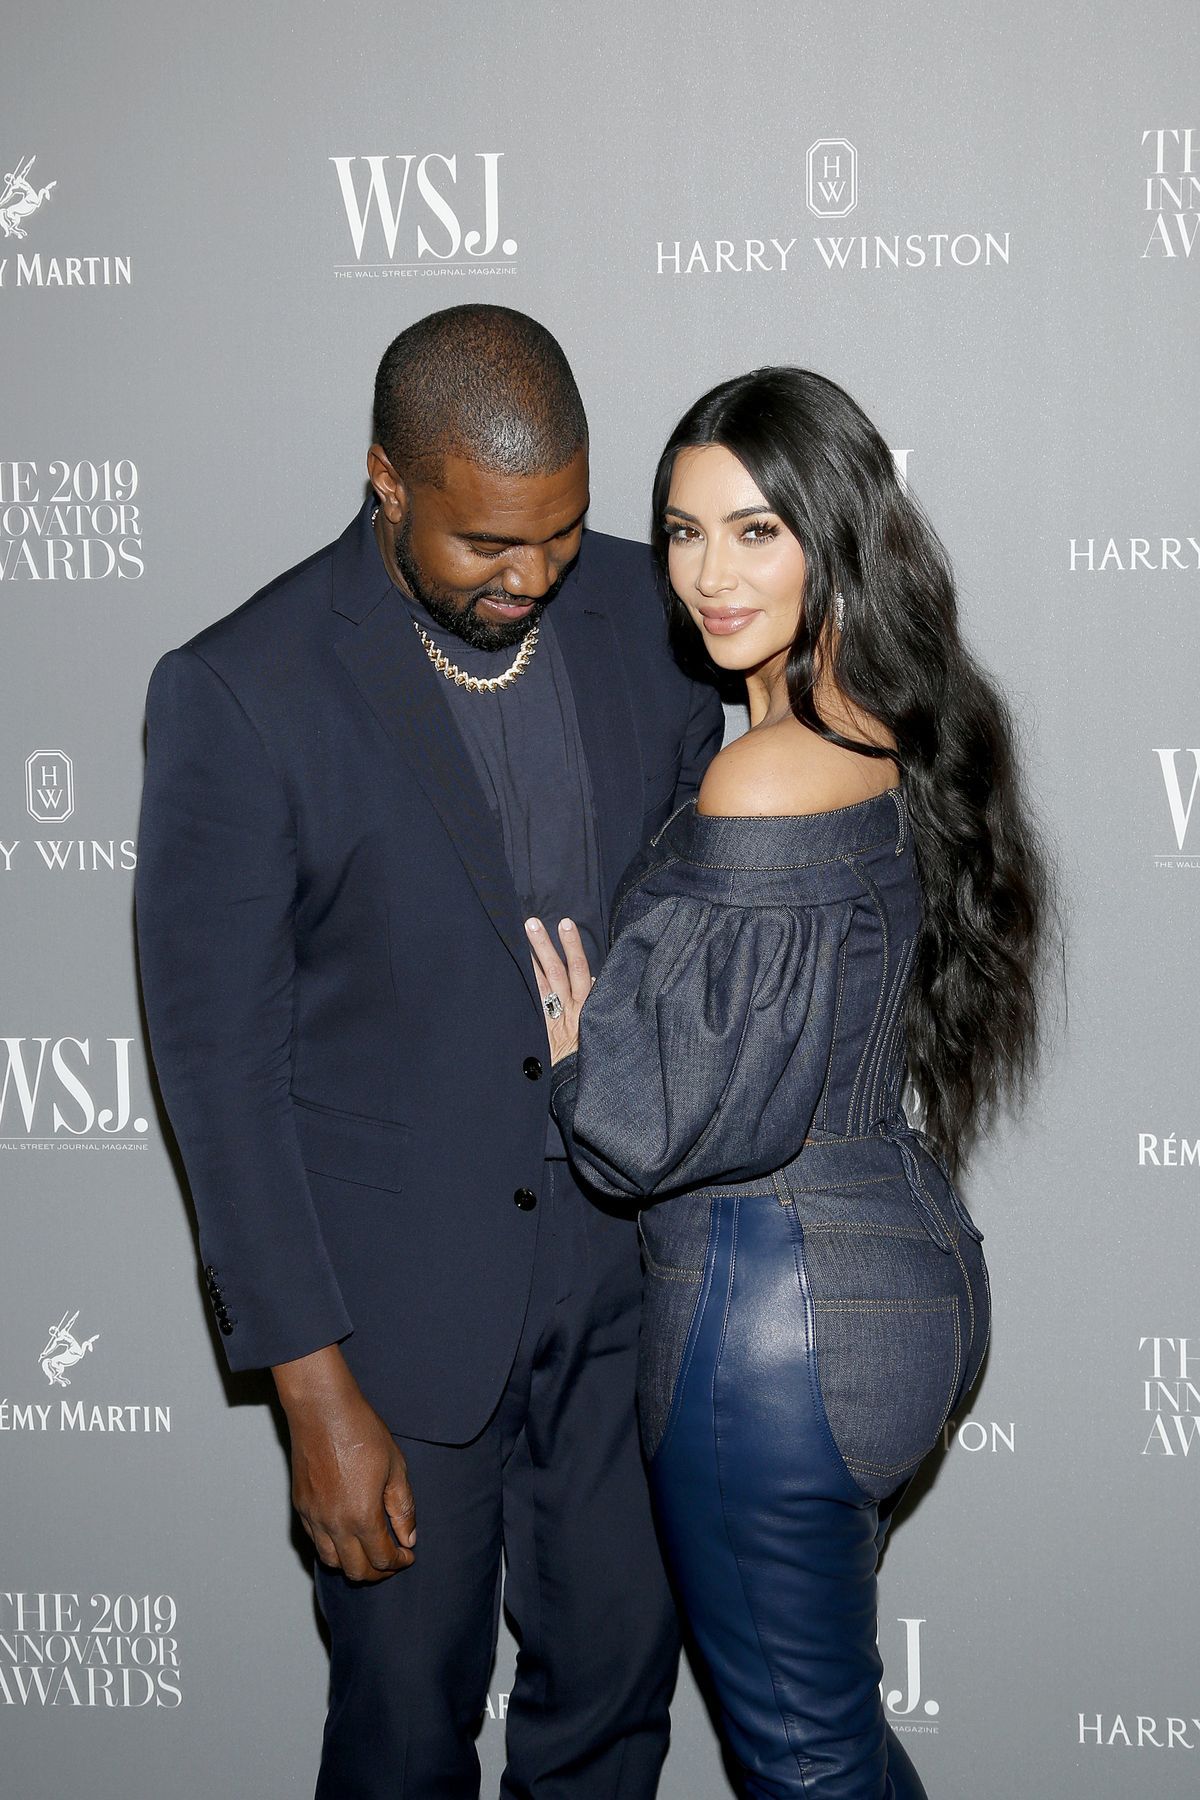 Kim Kardashian pukeutui hääpukuun Kanye Westin albumin kuuntelubileissä